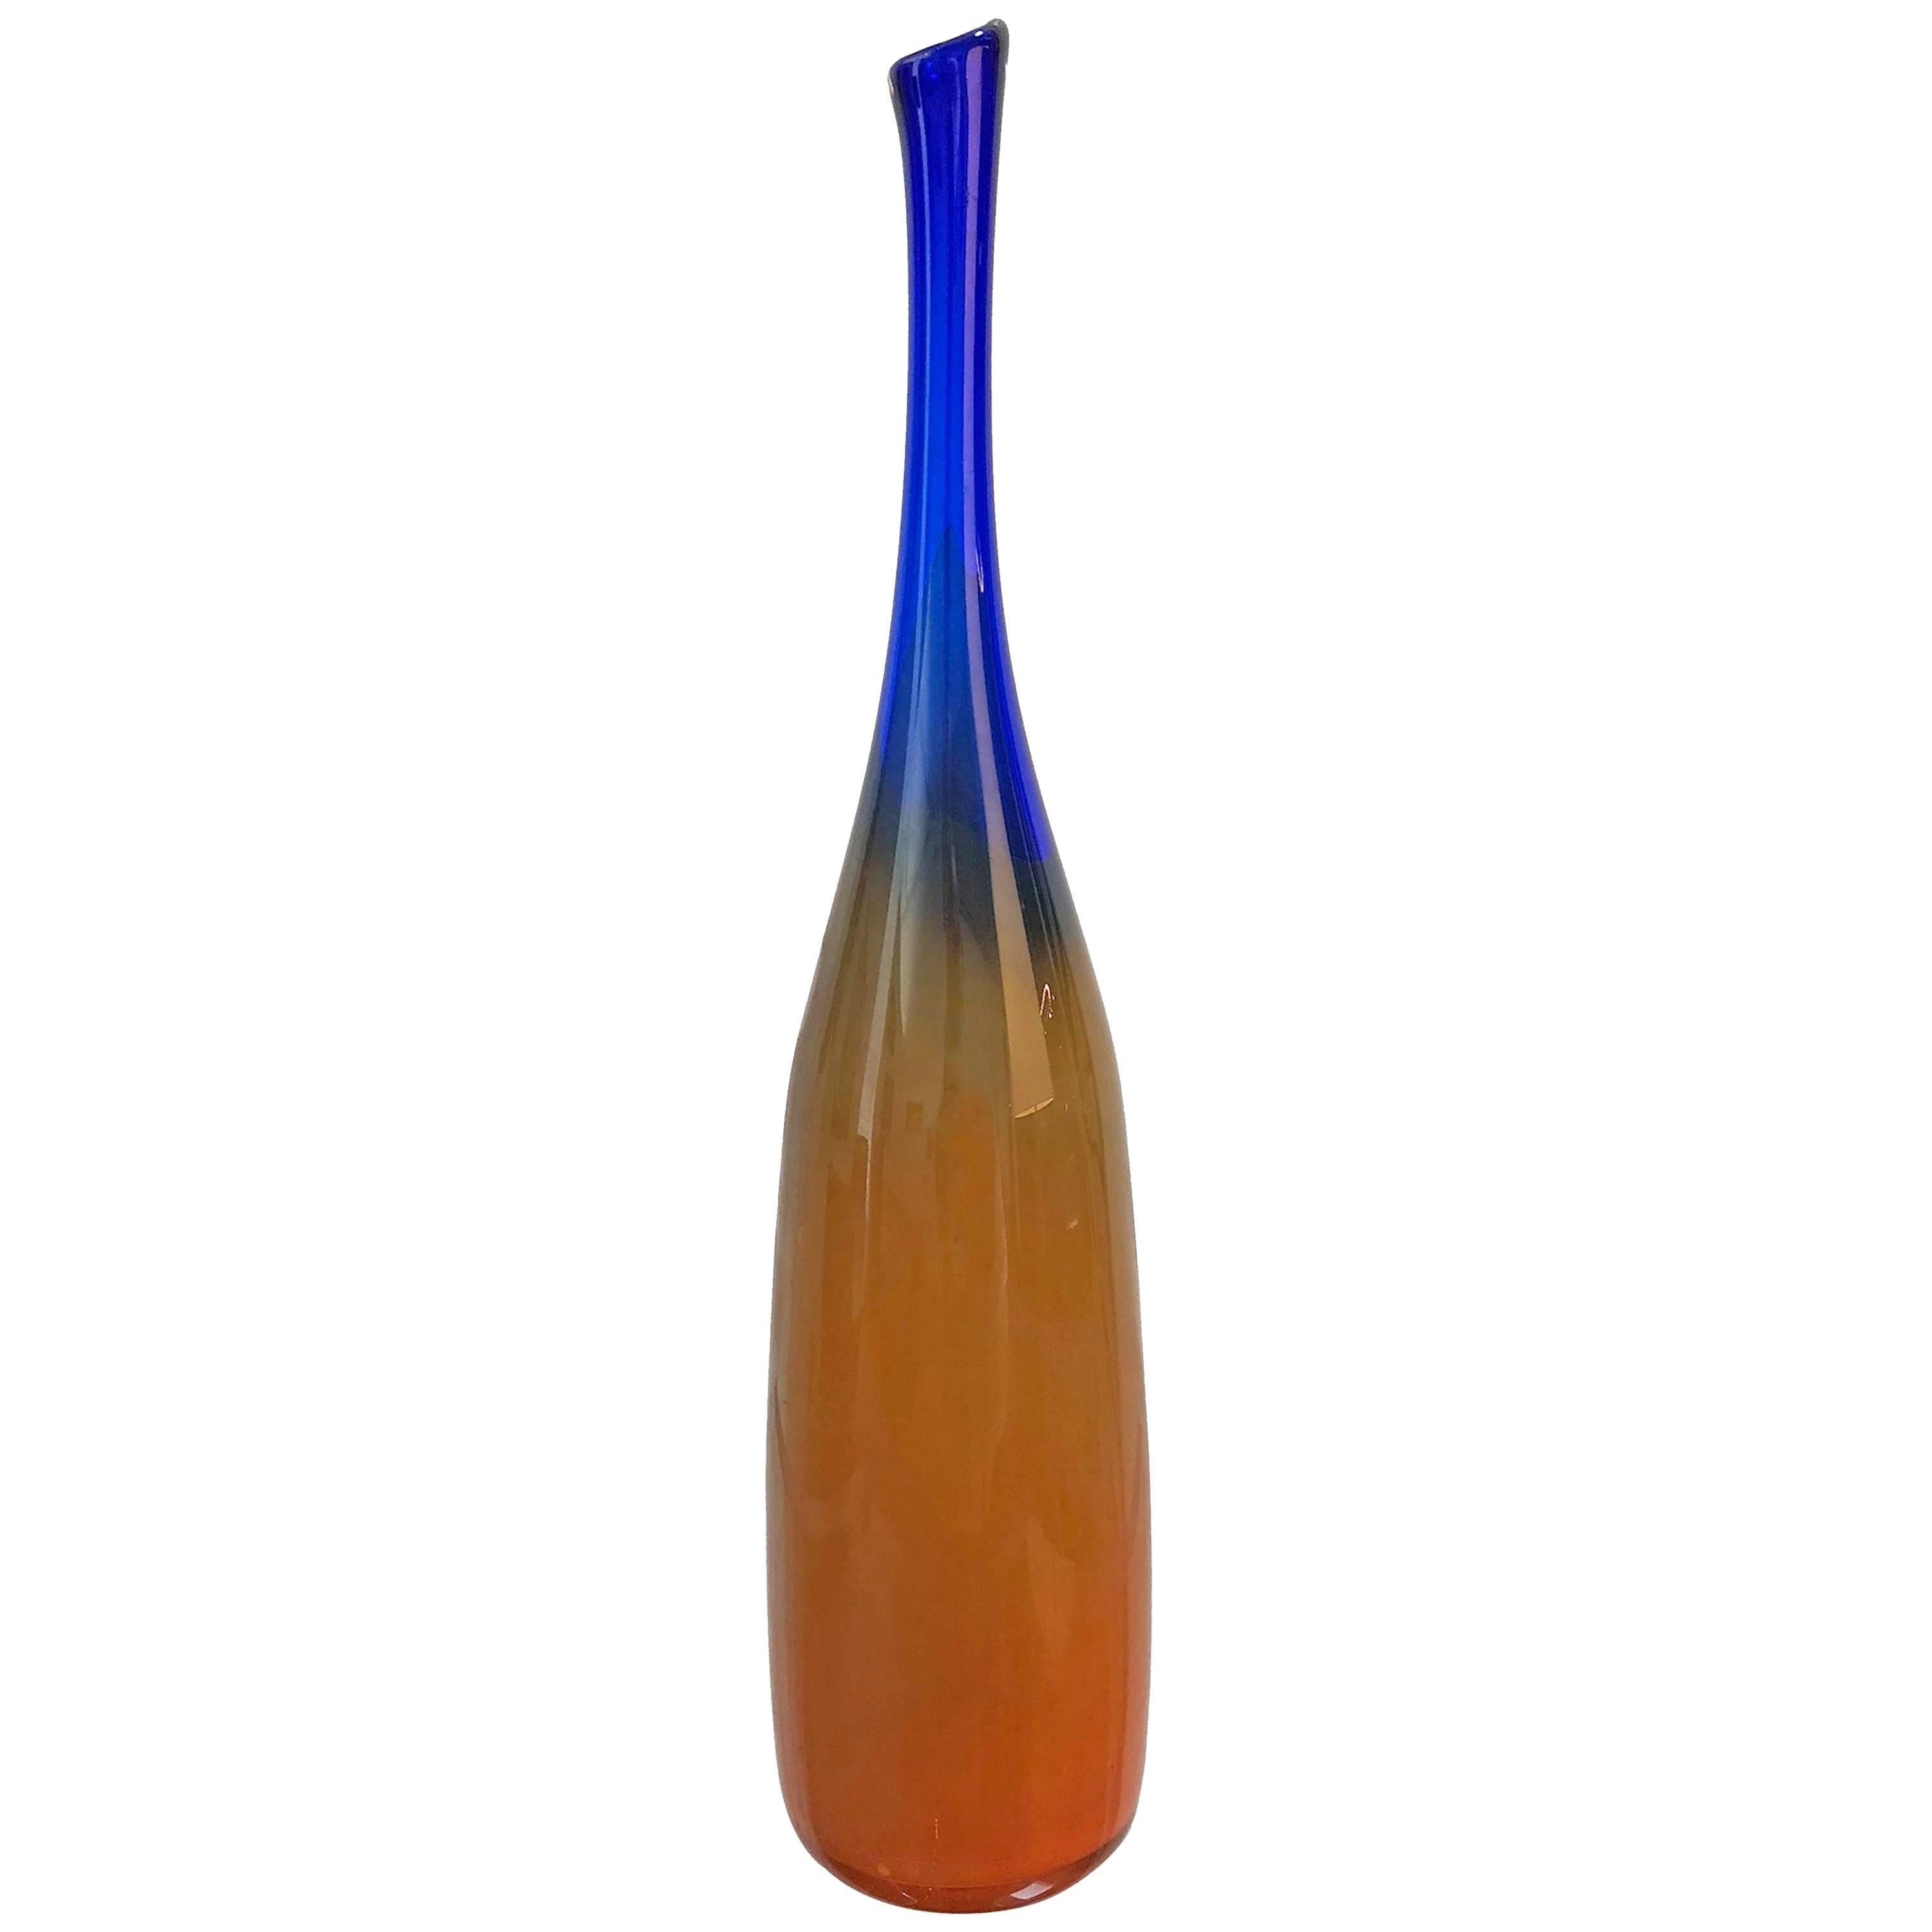 Signed Glass Vase from Leerdam Netherland